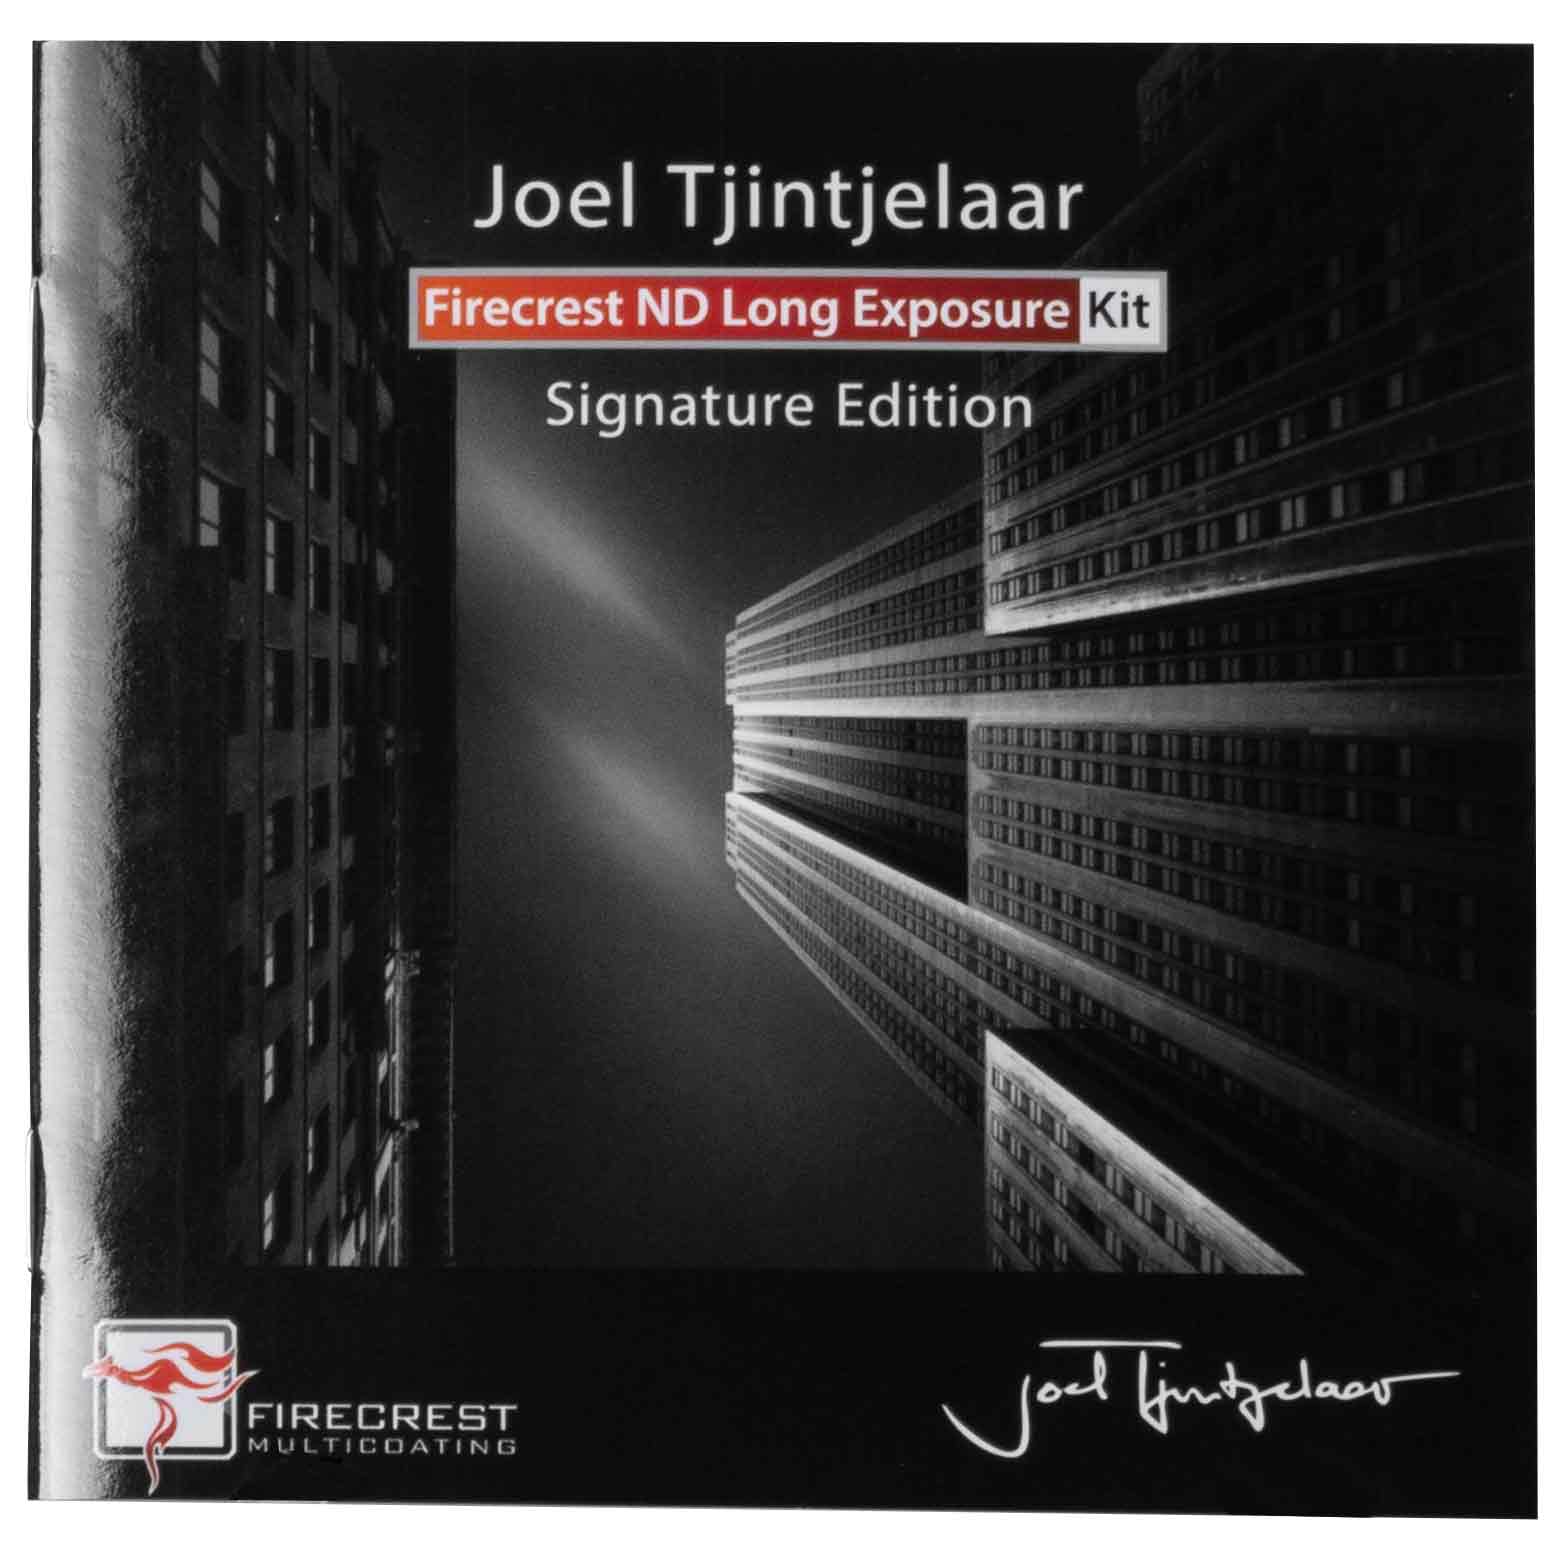 Firecrest Long Exposure Kit #2 by Joel Tjintjelaar